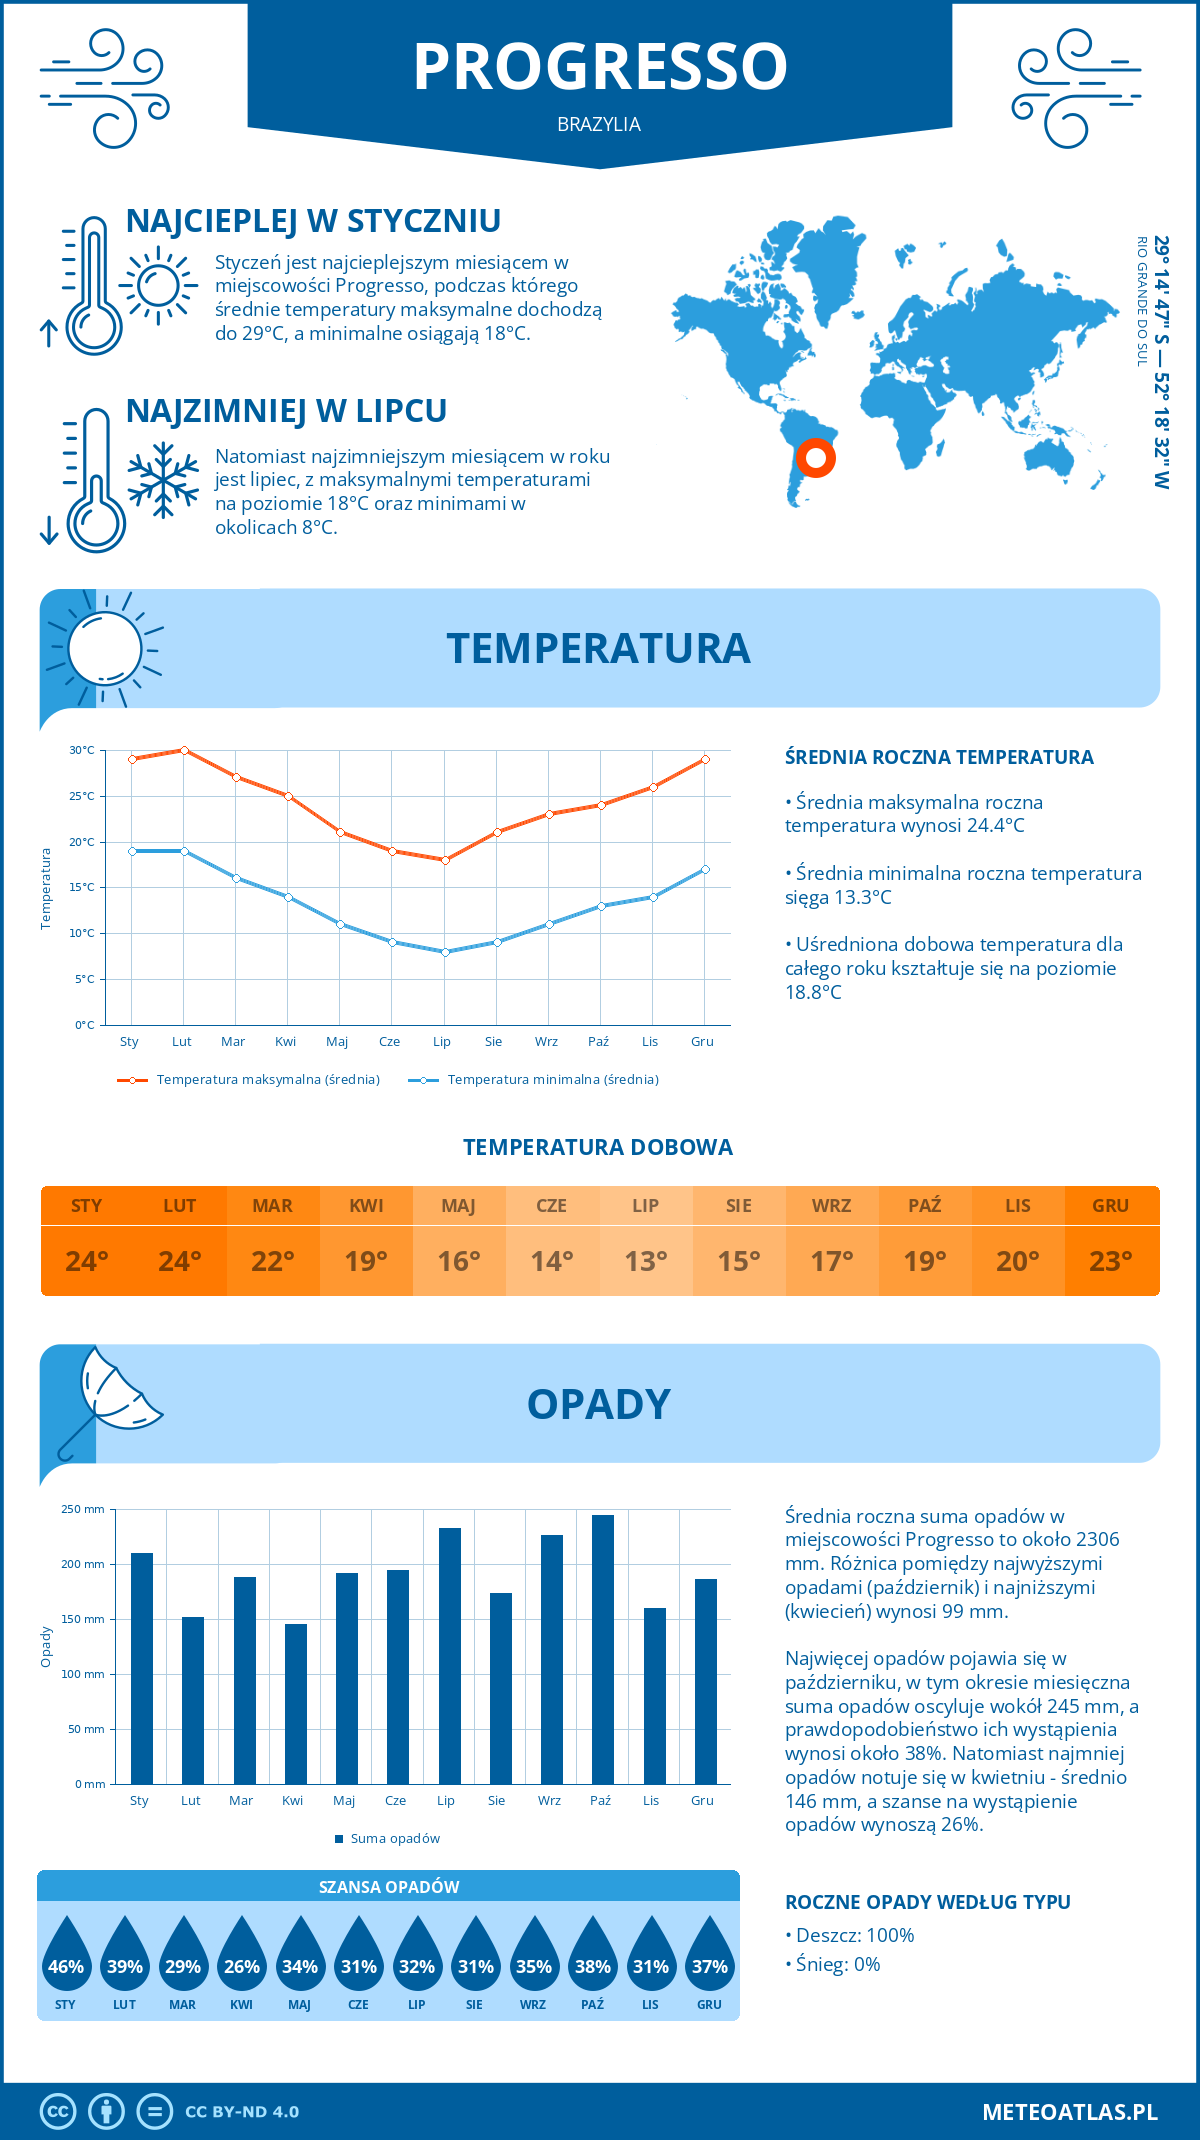 Pogoda Progresso (Brazylia). Temperatura oraz opady.